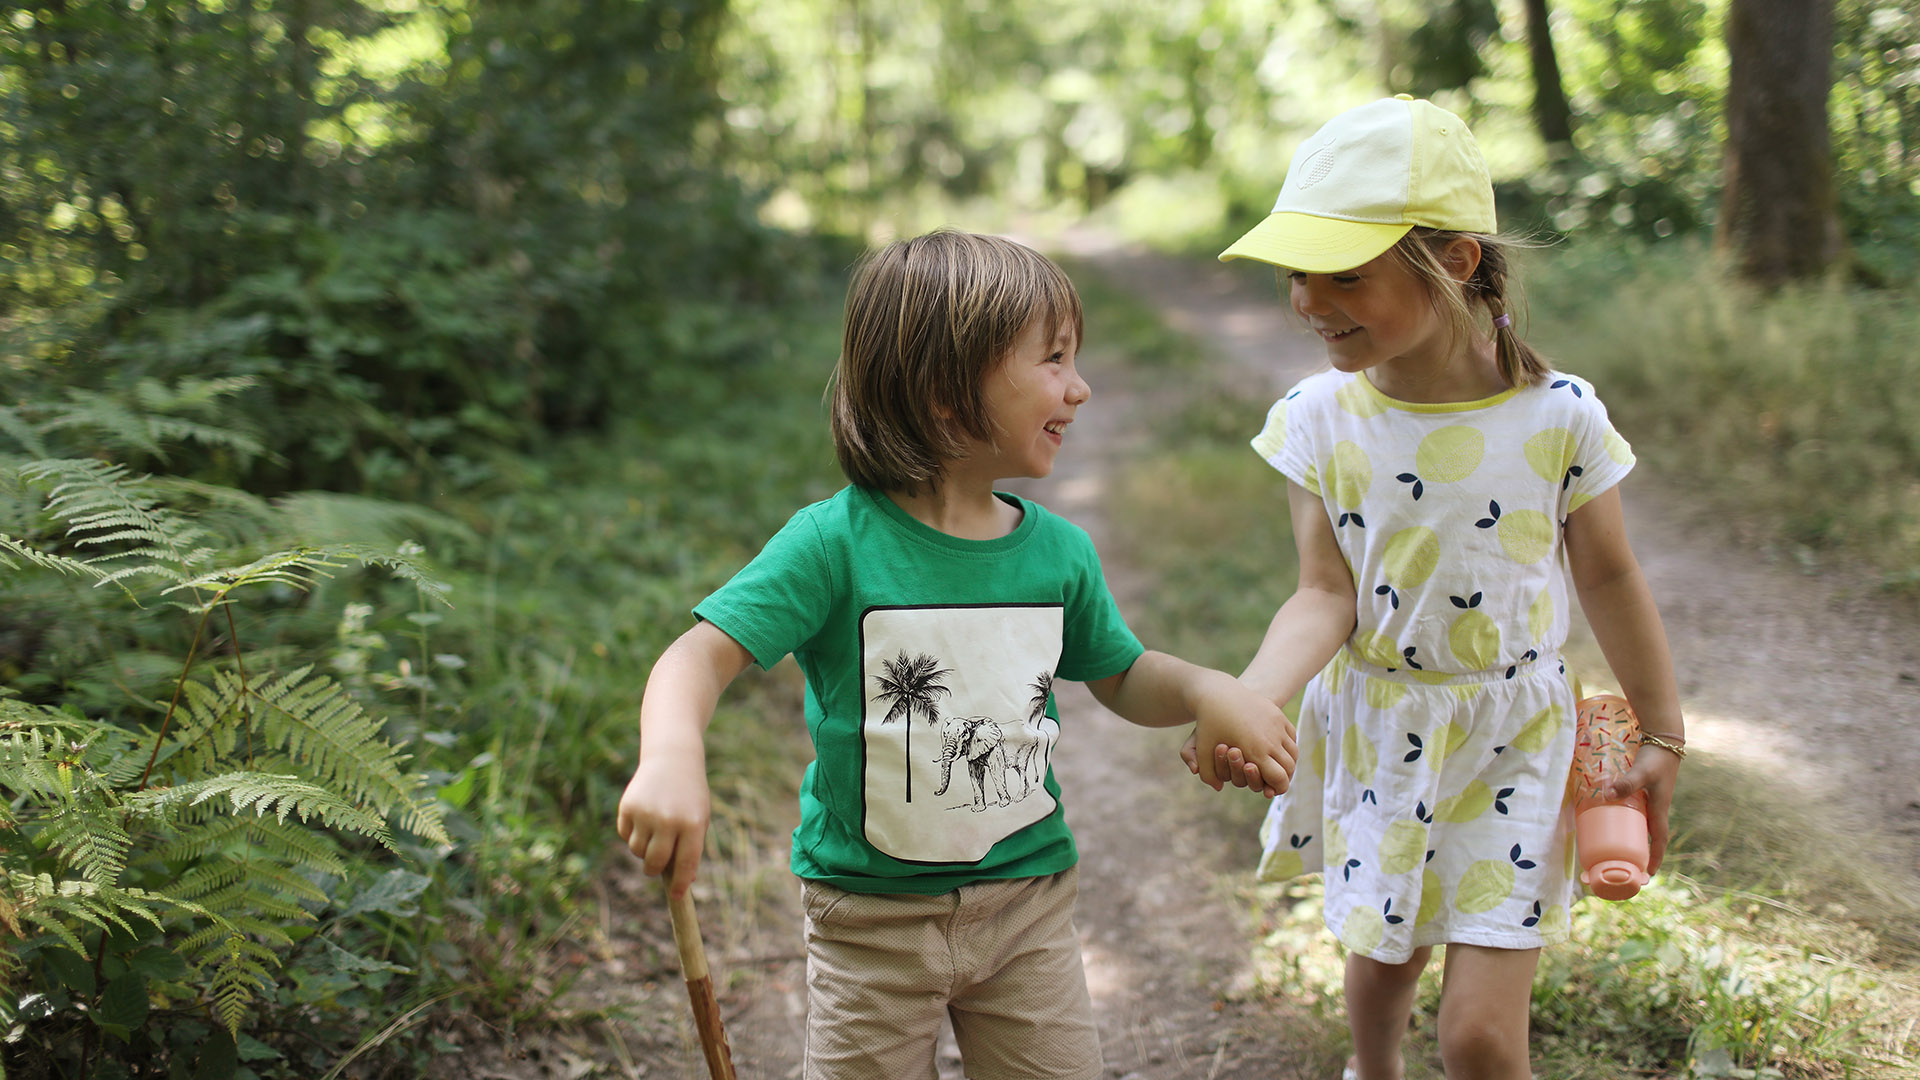 Investigadores de la Universidad de Columbia Británica señalaron que pasar tiempo en la naturaleza promueve el desarrollo de la primera infancia (Getty Images)